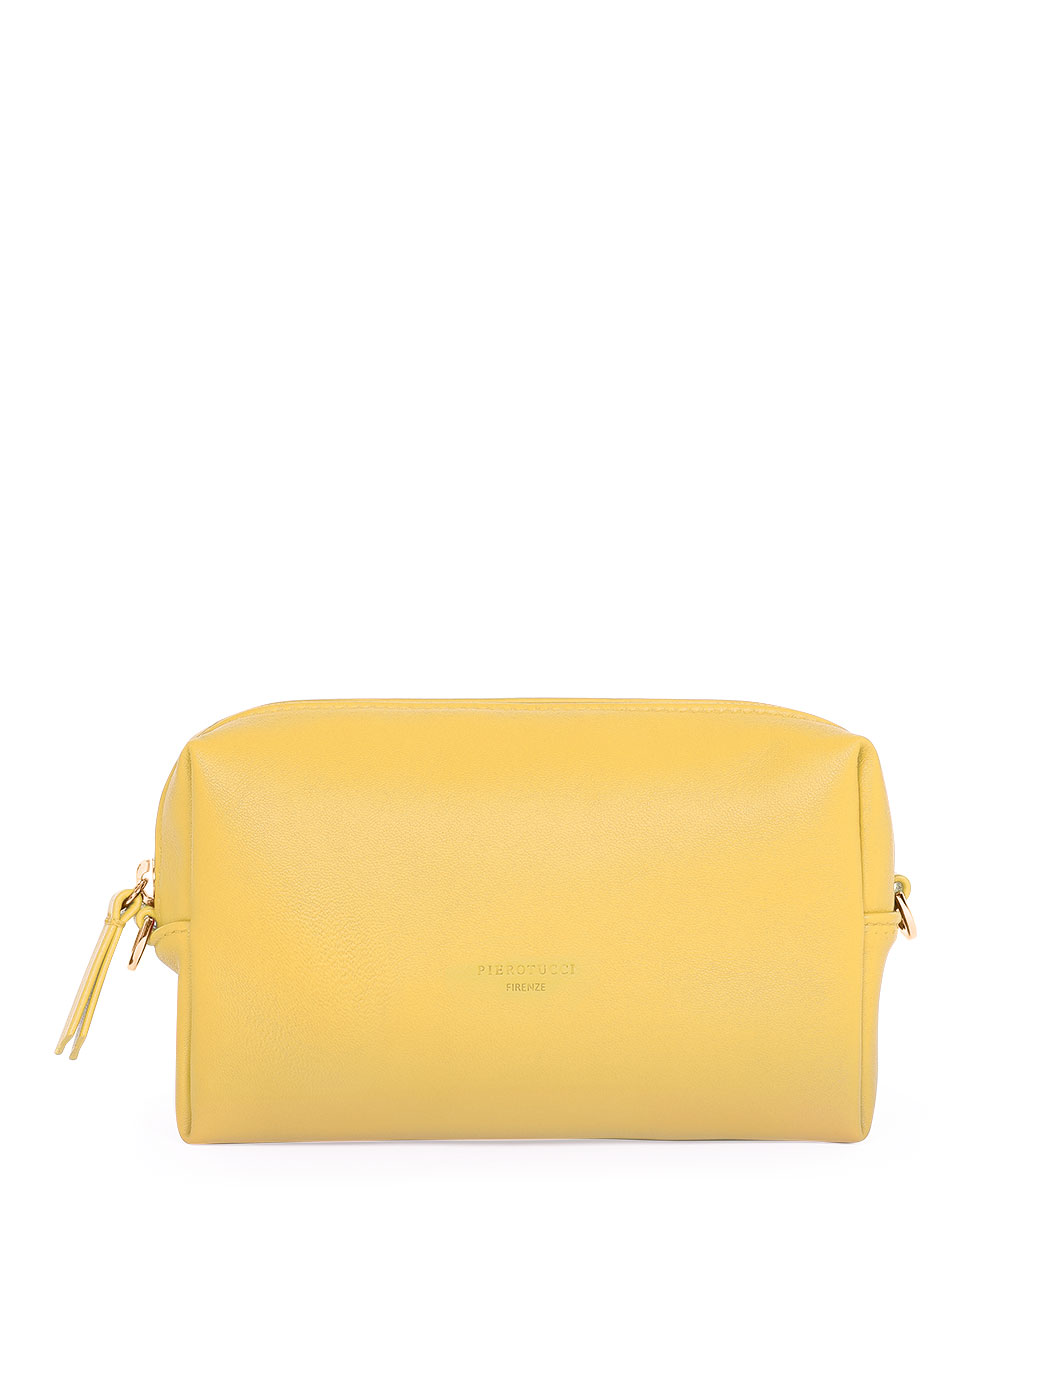 Прямоугольная сумочка с регулируемым ремнем желтого цвета